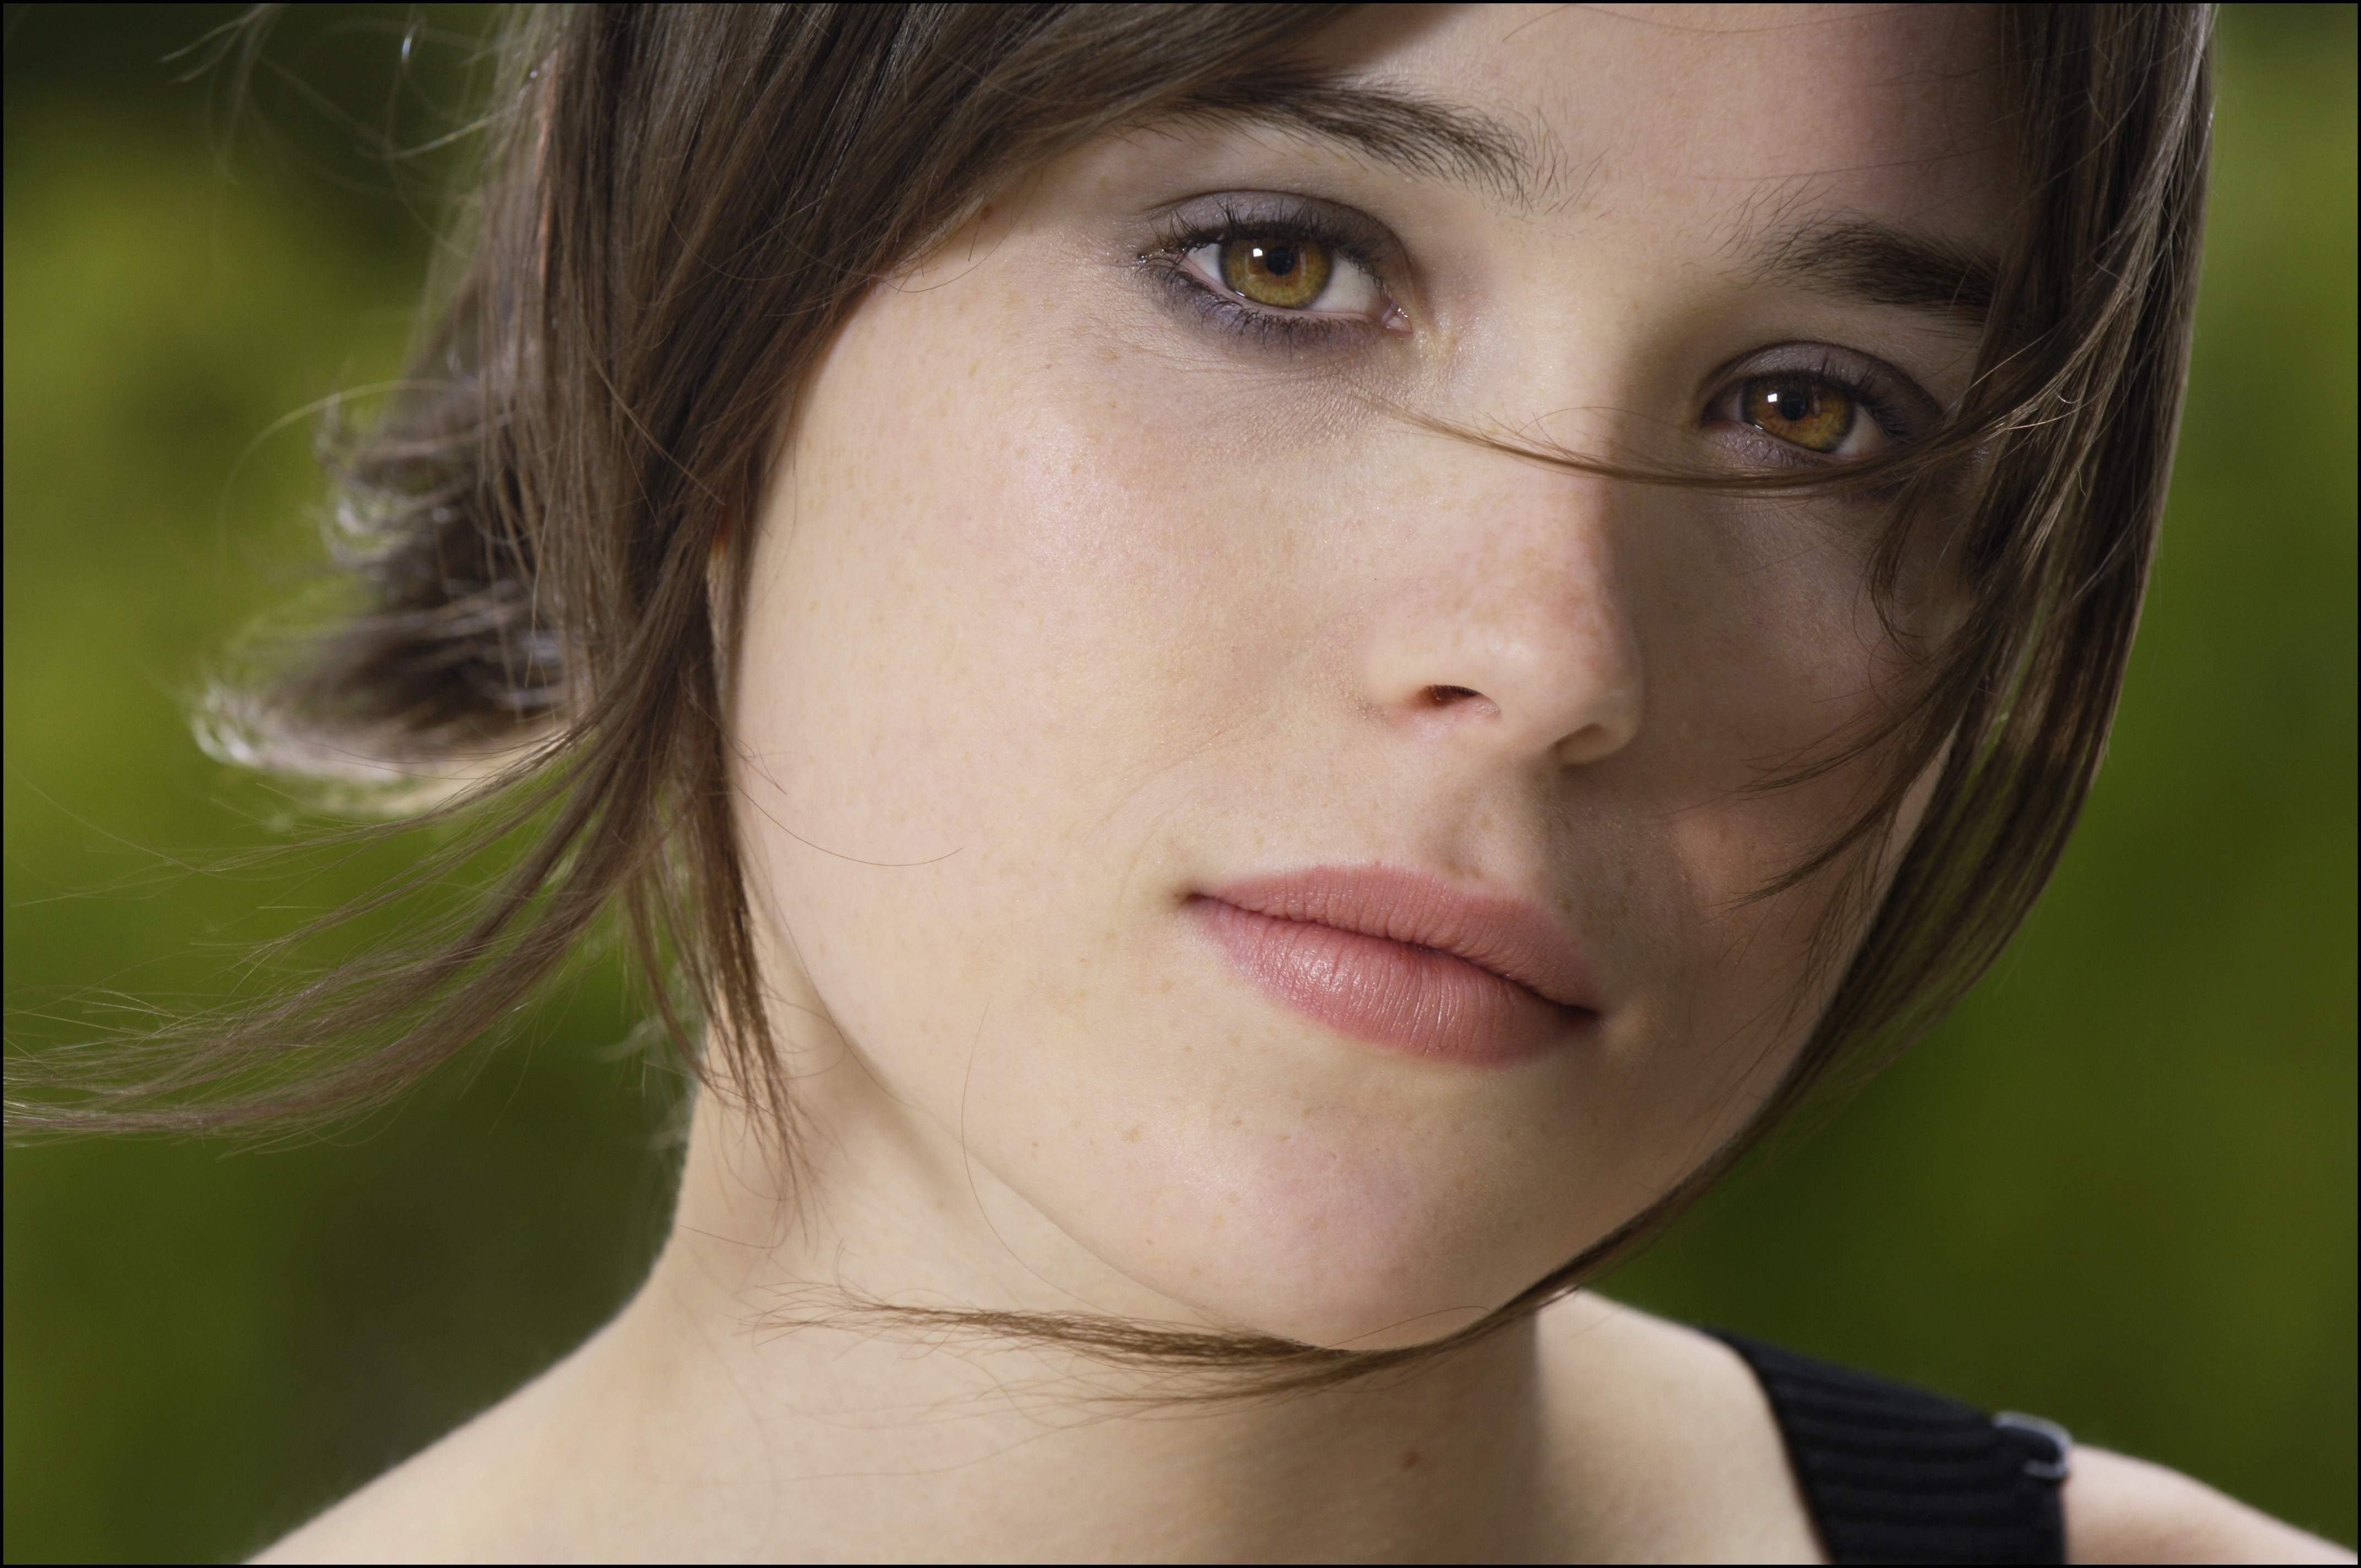 Ellen Page Backgrounds, Compatible - PC, Mobile, Gadgets| 4288x2848 px